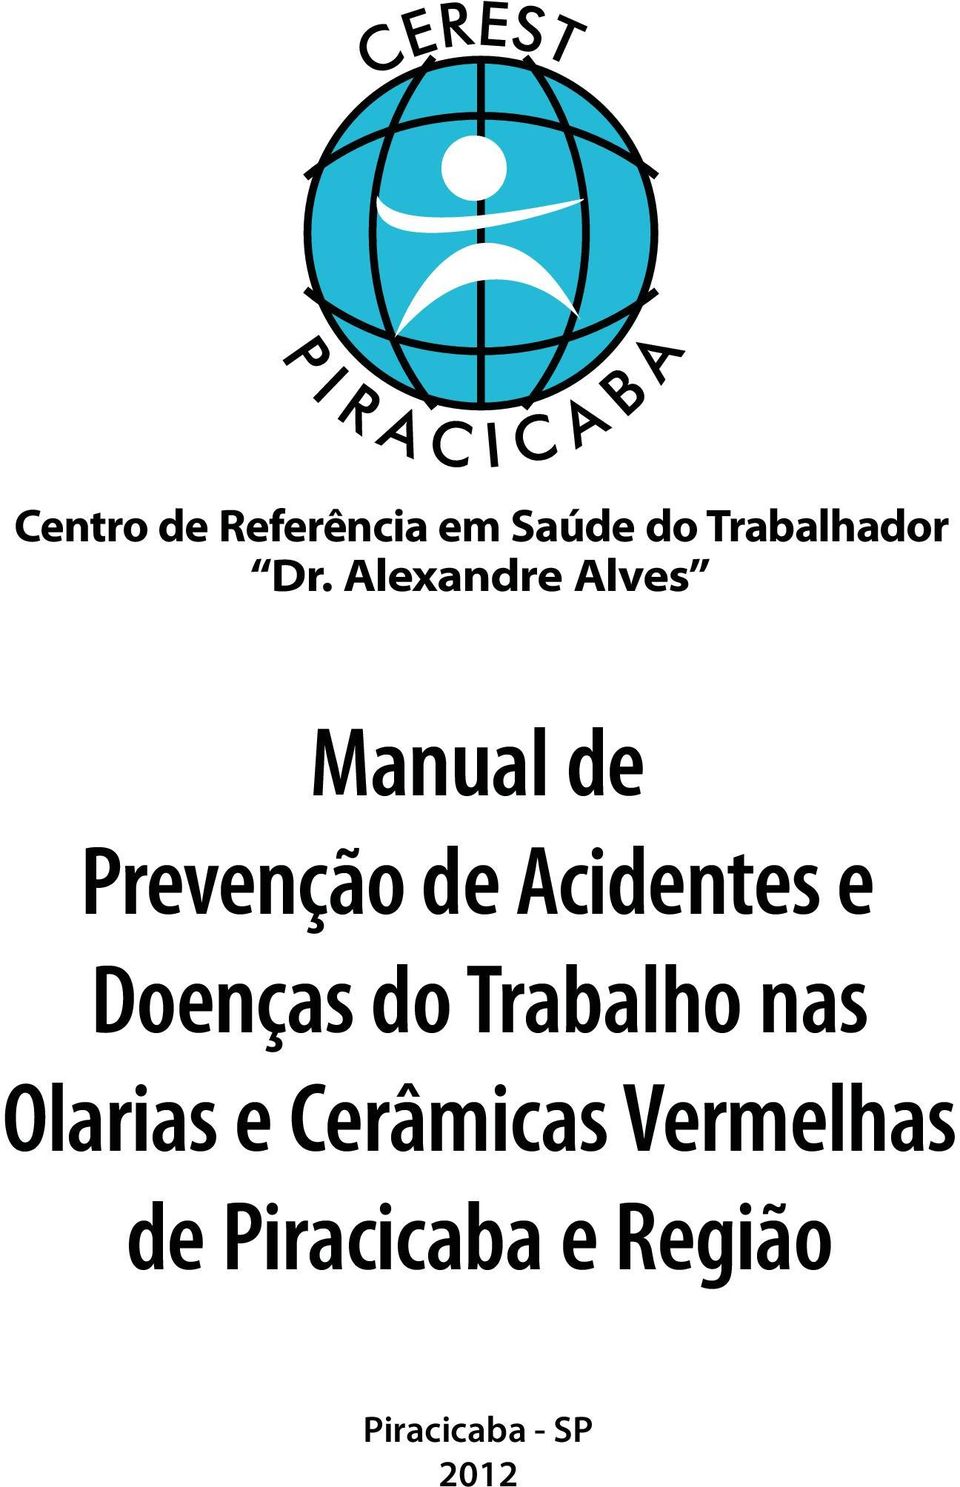 Alexandre Alves Manual de Prevenção de Acidentes e